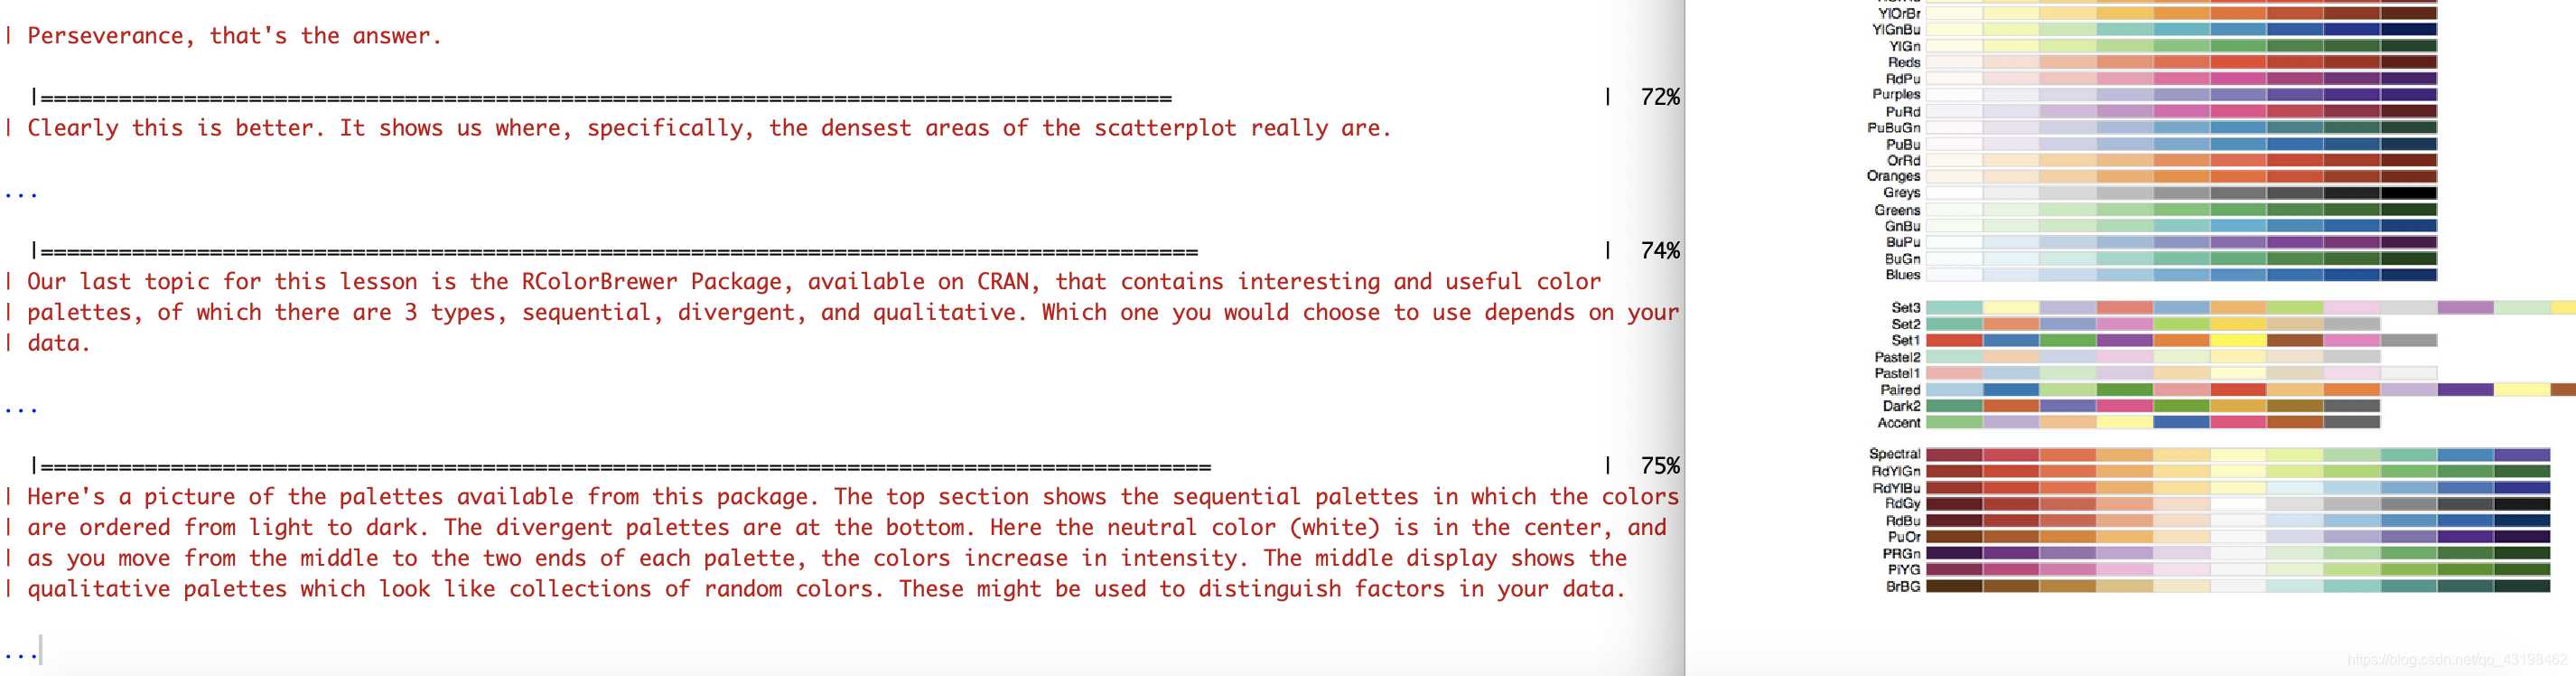 左边是对此包的简单介绍，右边是其中存储颜色的三种方法对应的排列（sequential，divergent，qualitative）